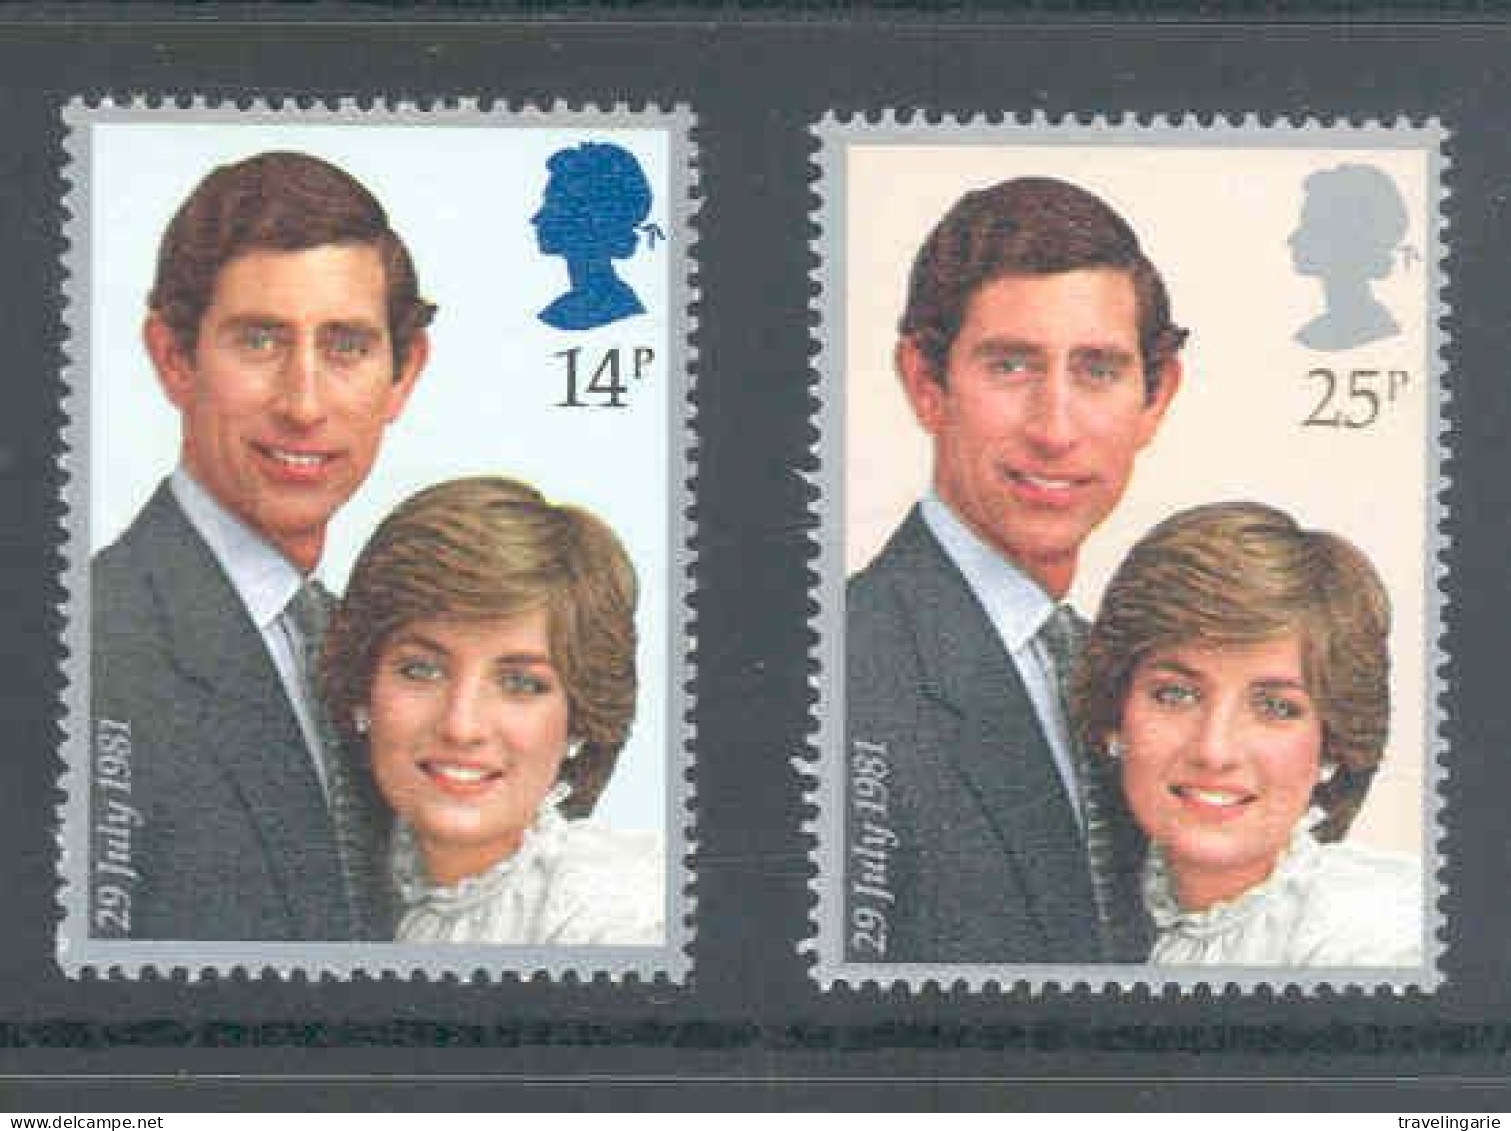 Great-Britain 1981 Royal Wedding Prince Charles And Lady Diana MNH ** - Royalties, Royals